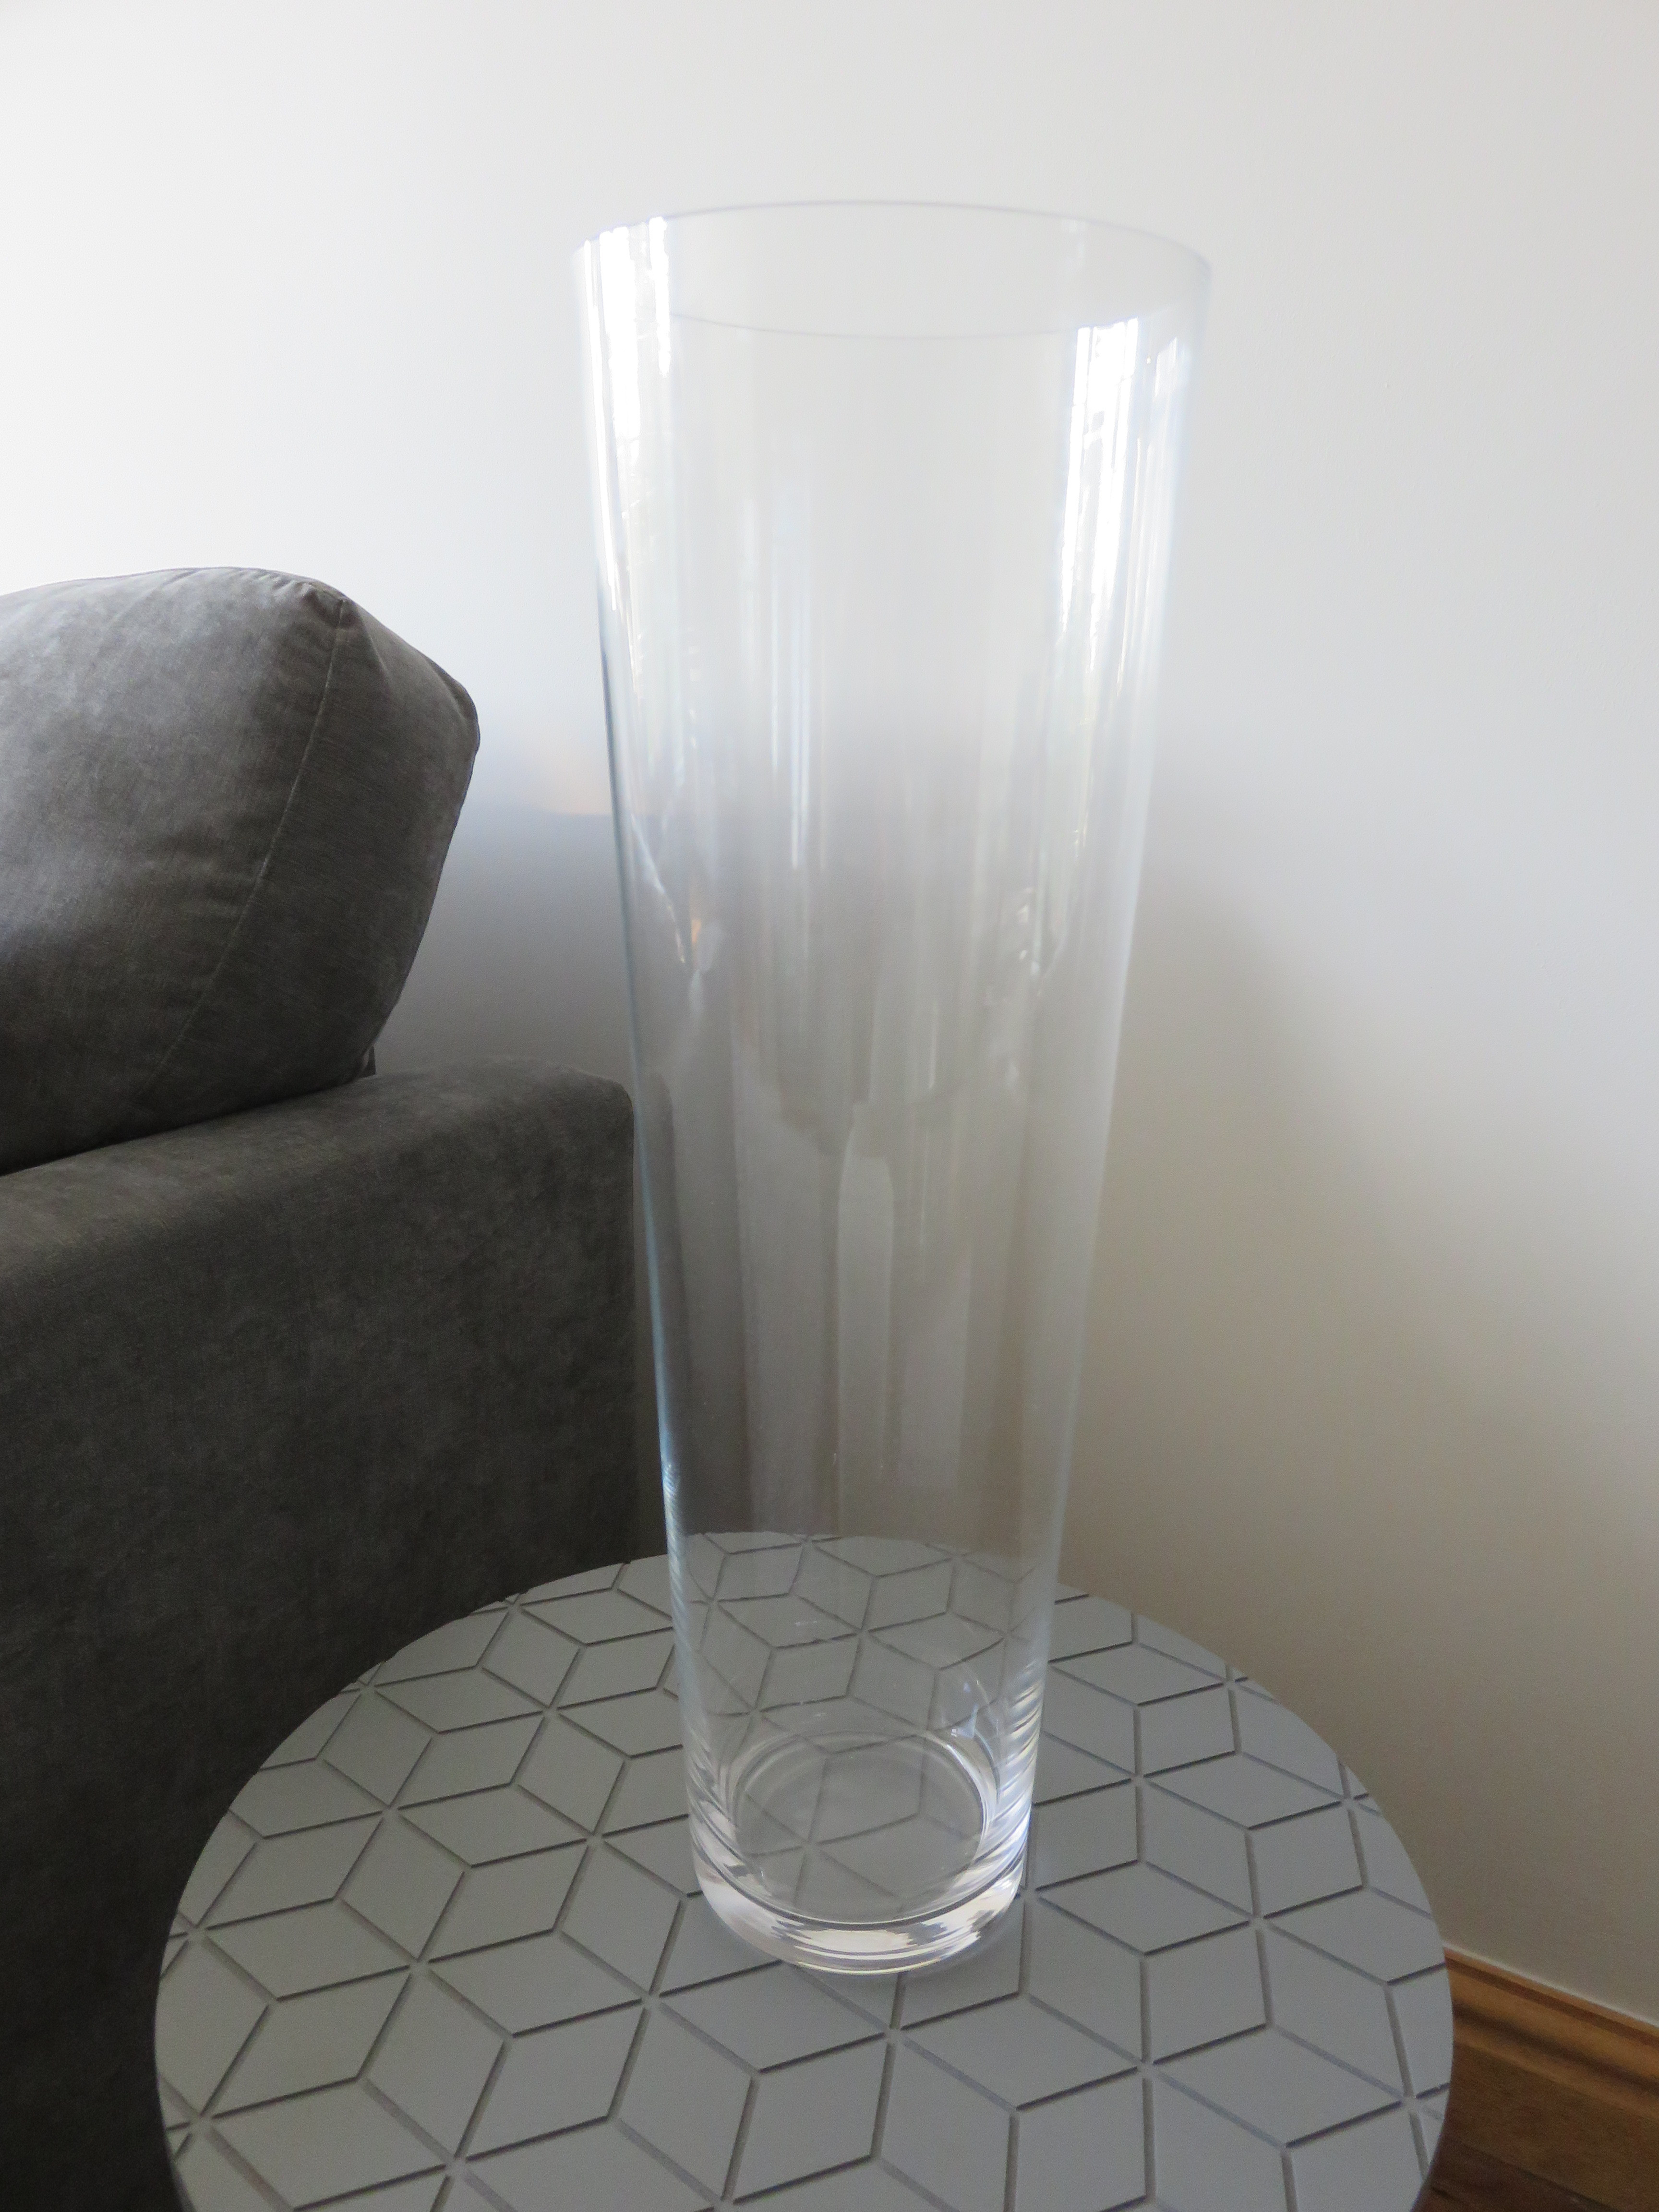 homesense vases of home sense haul intended for tall glass vase